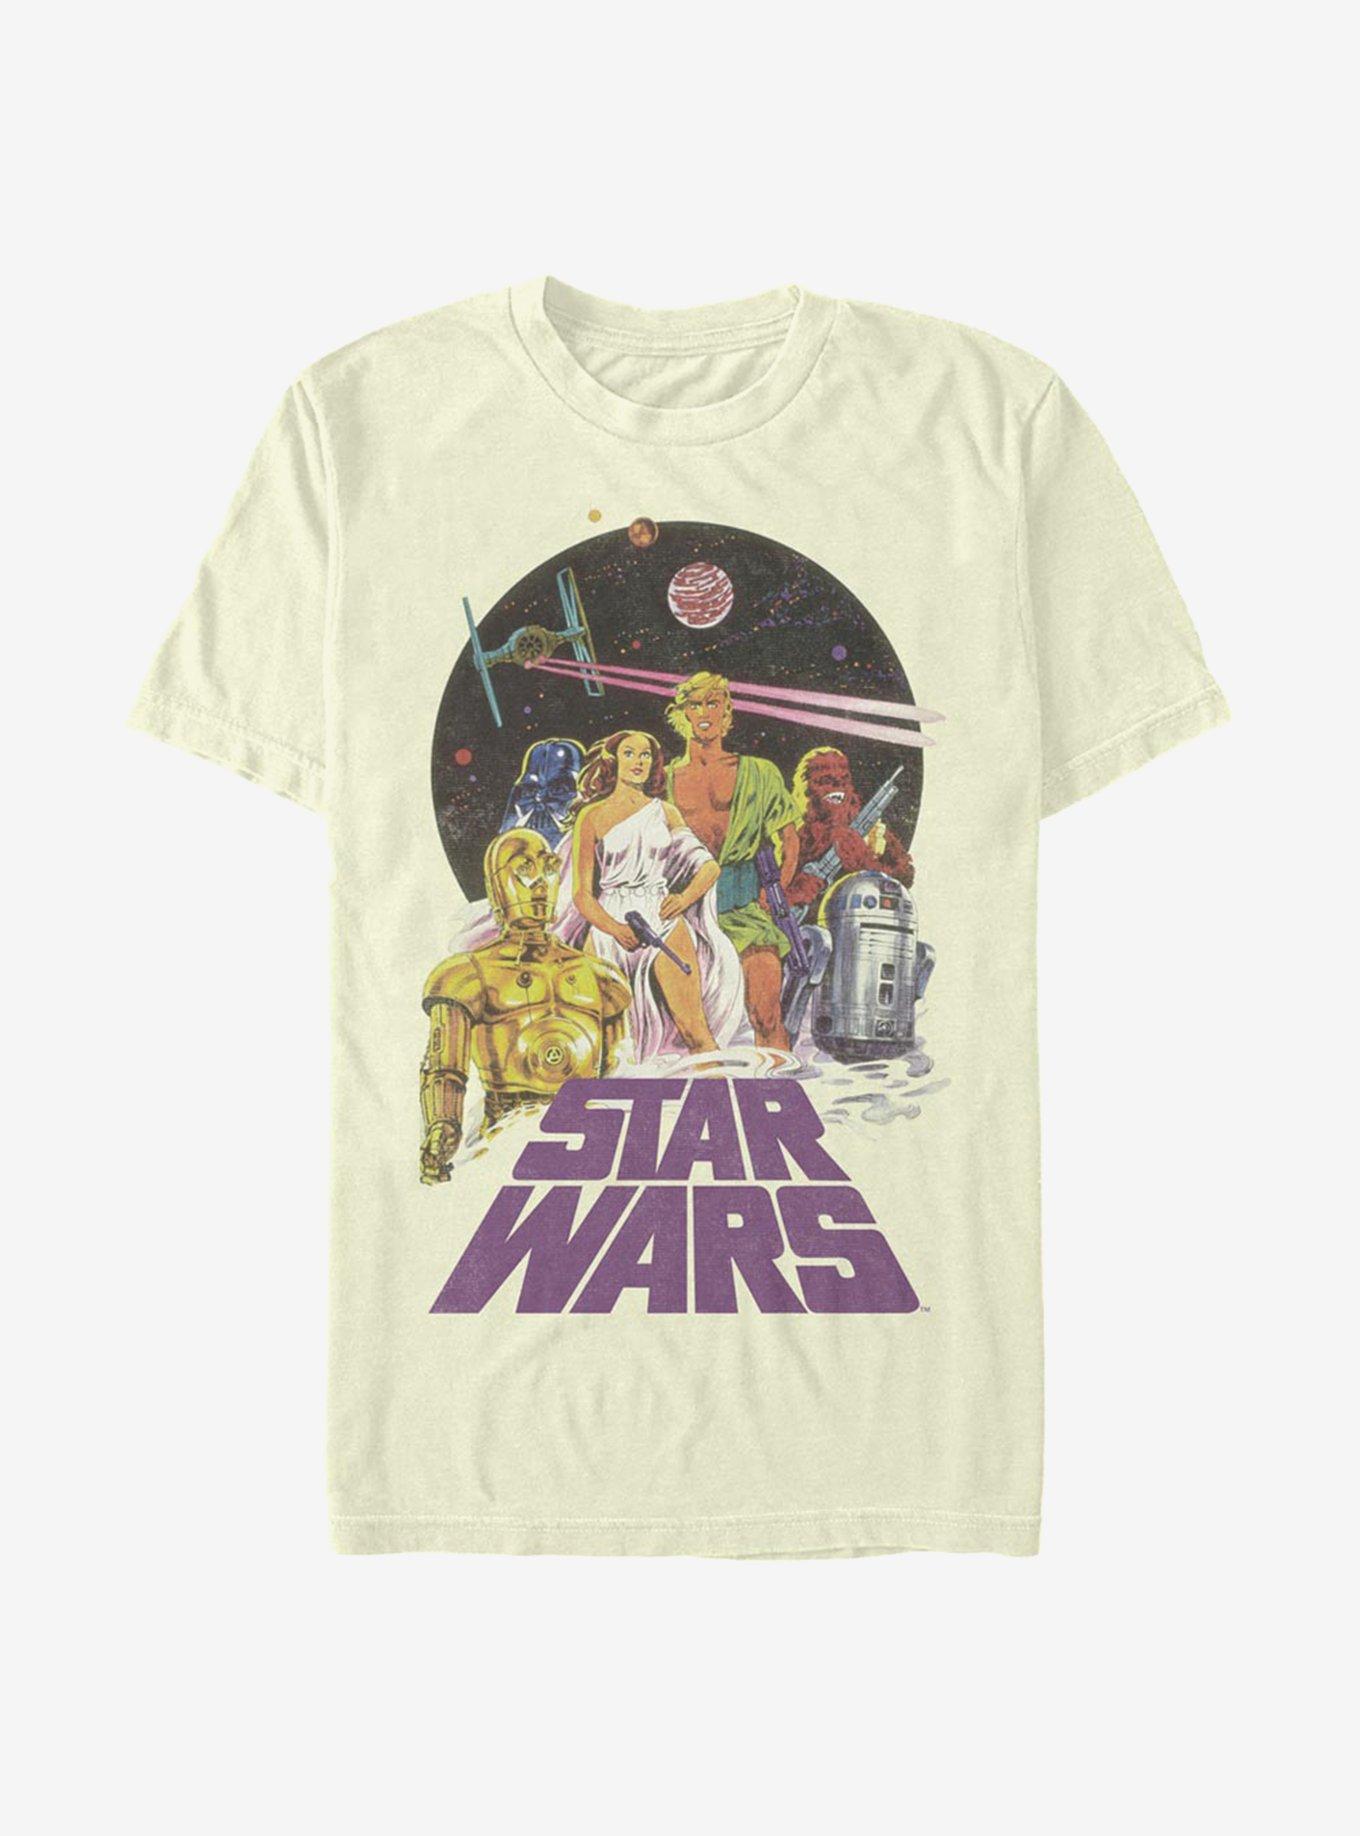 Star Wars Vintage Star Wars T-Shirt - BEIGE/TAN | Hot Topic